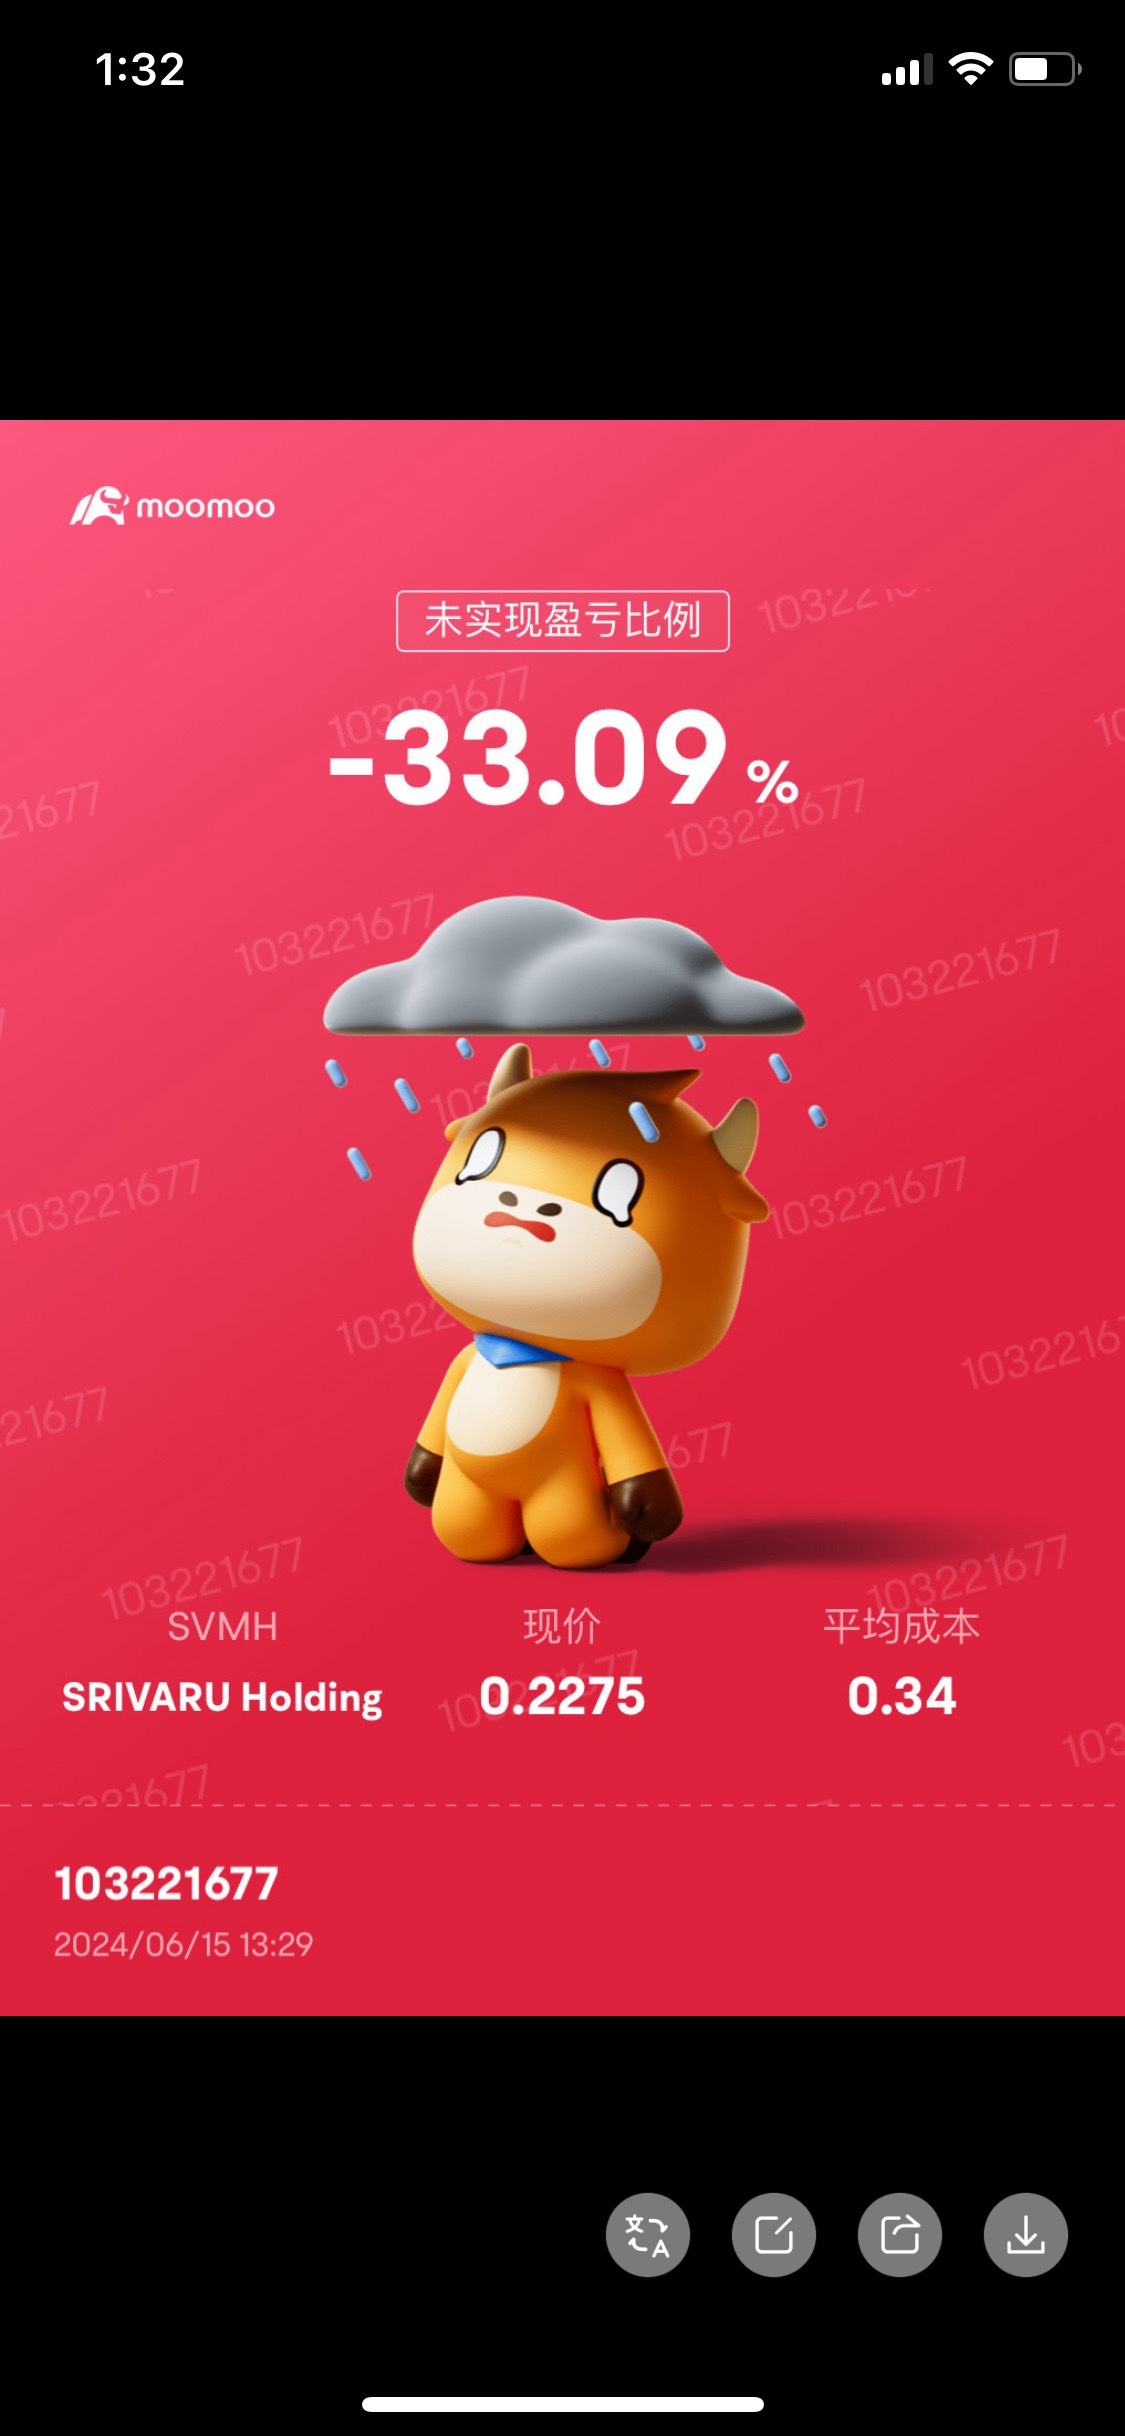 $SRIVARU Holding (SVMH.US)$ 該死的 在0.40不出售